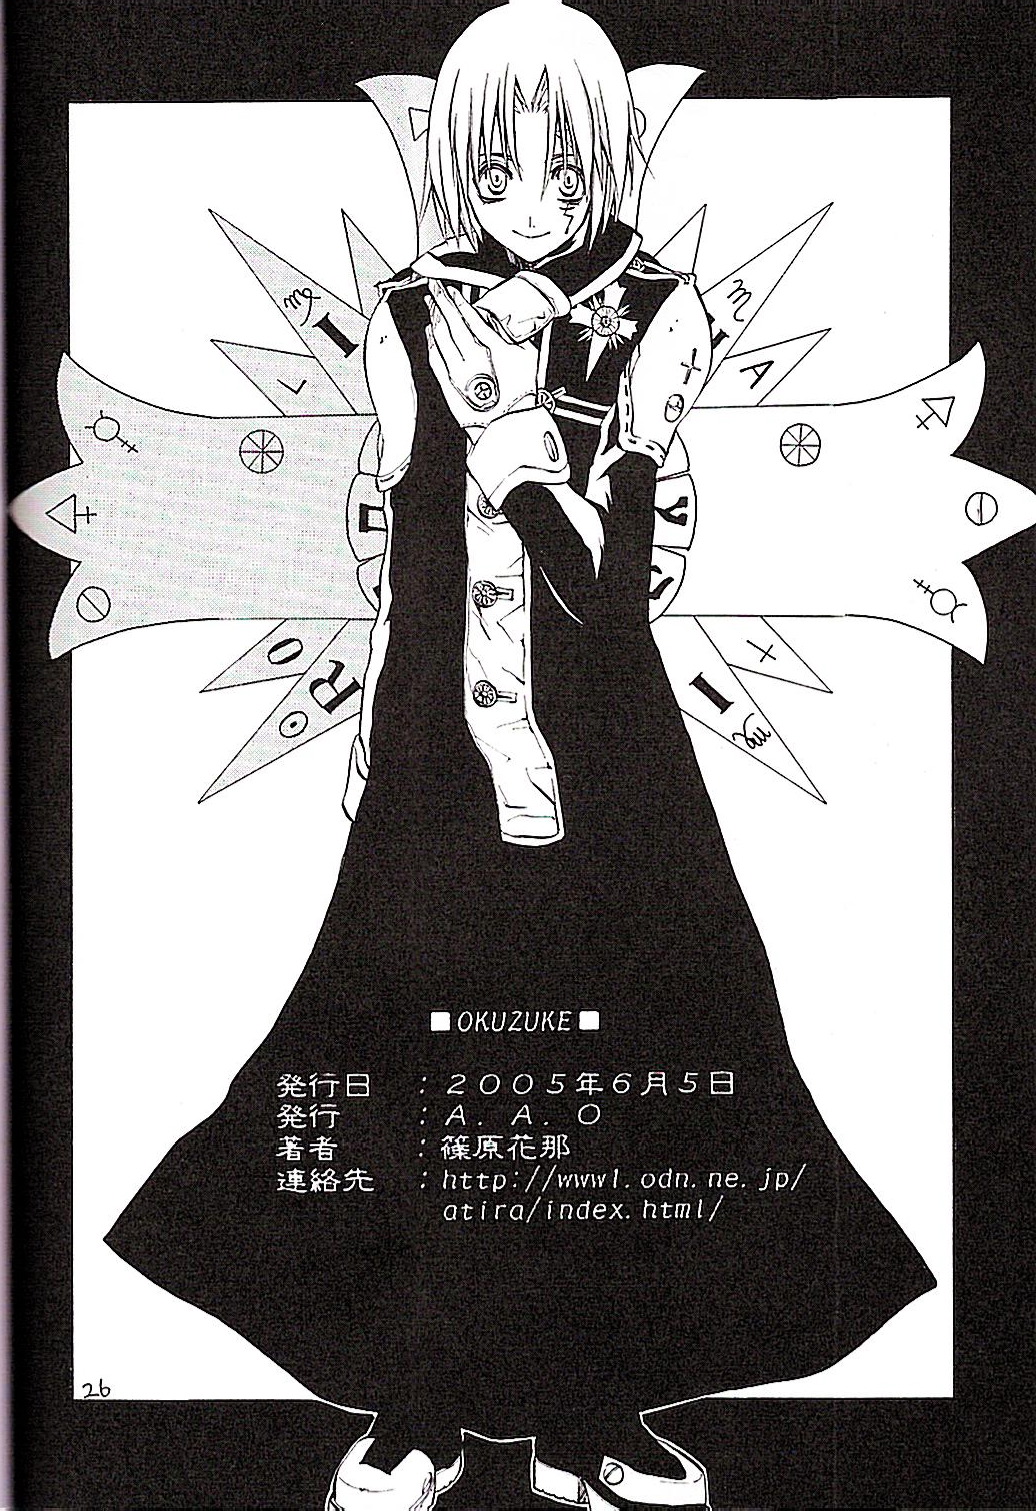 (Mimiket 12) [A.A.O (Shinohara Hana)] CRUSADER (D.Gray-man) page 26 full